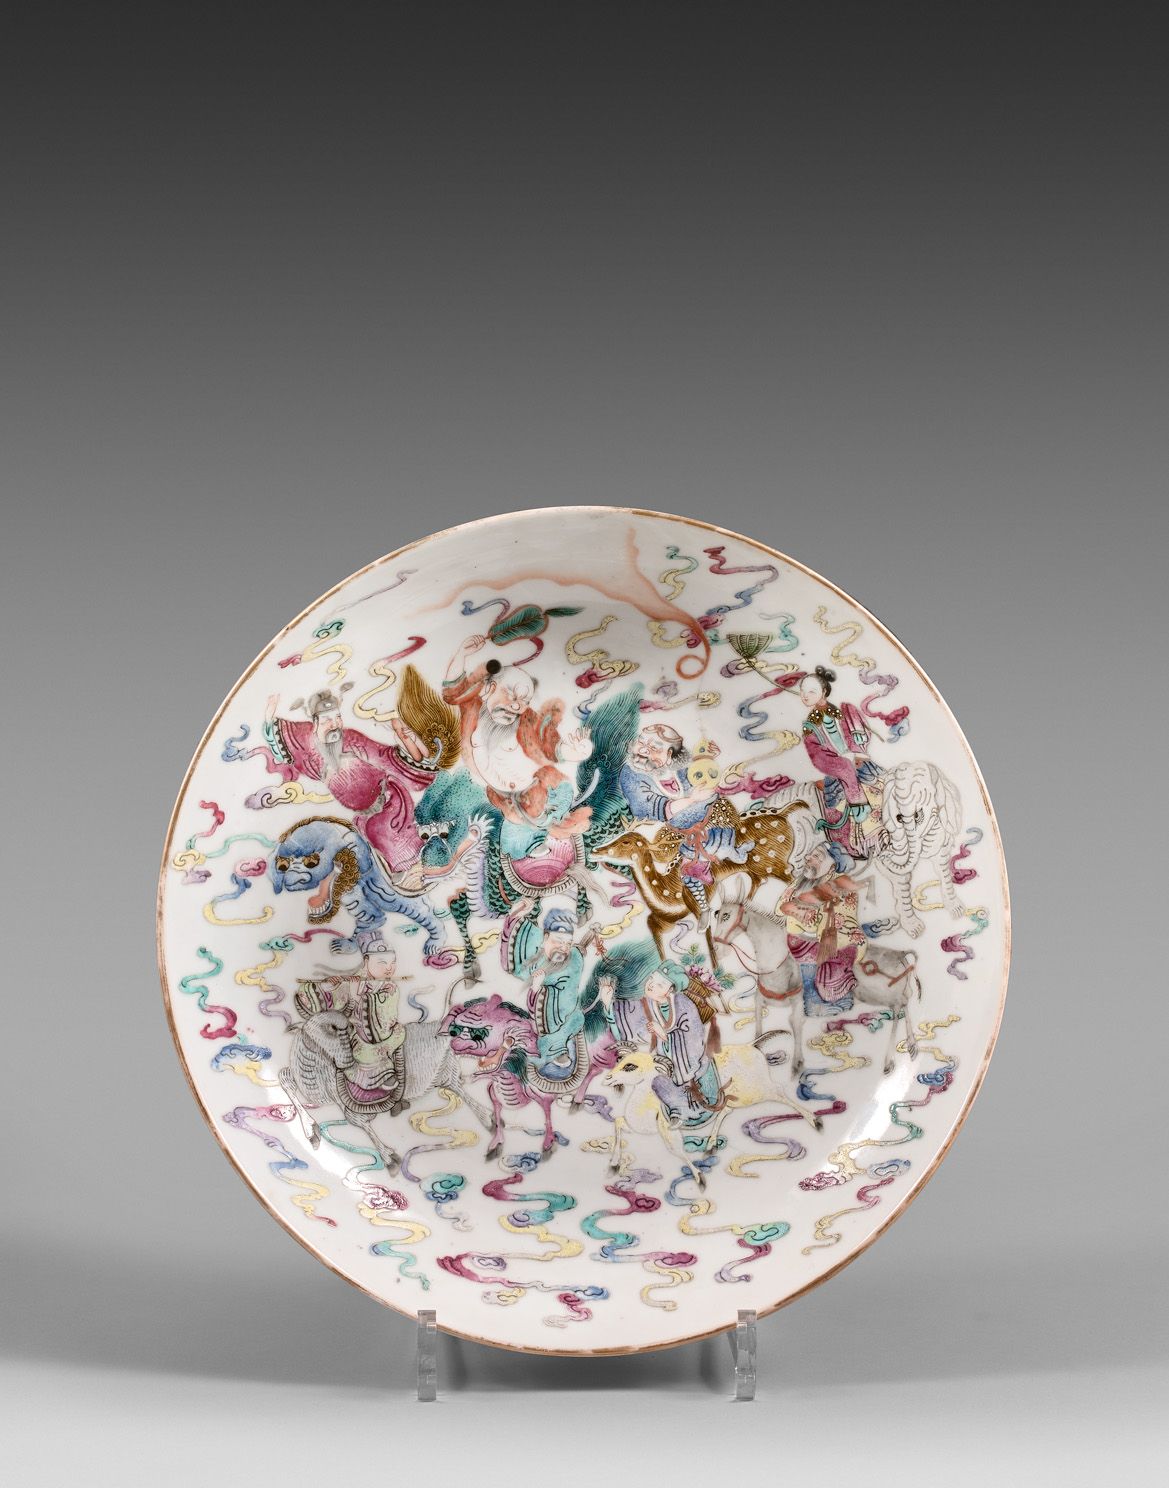 Null China, siglo XIX

Cuenco de porcelana y esmalte familiar, decorado con ocho&hellip;